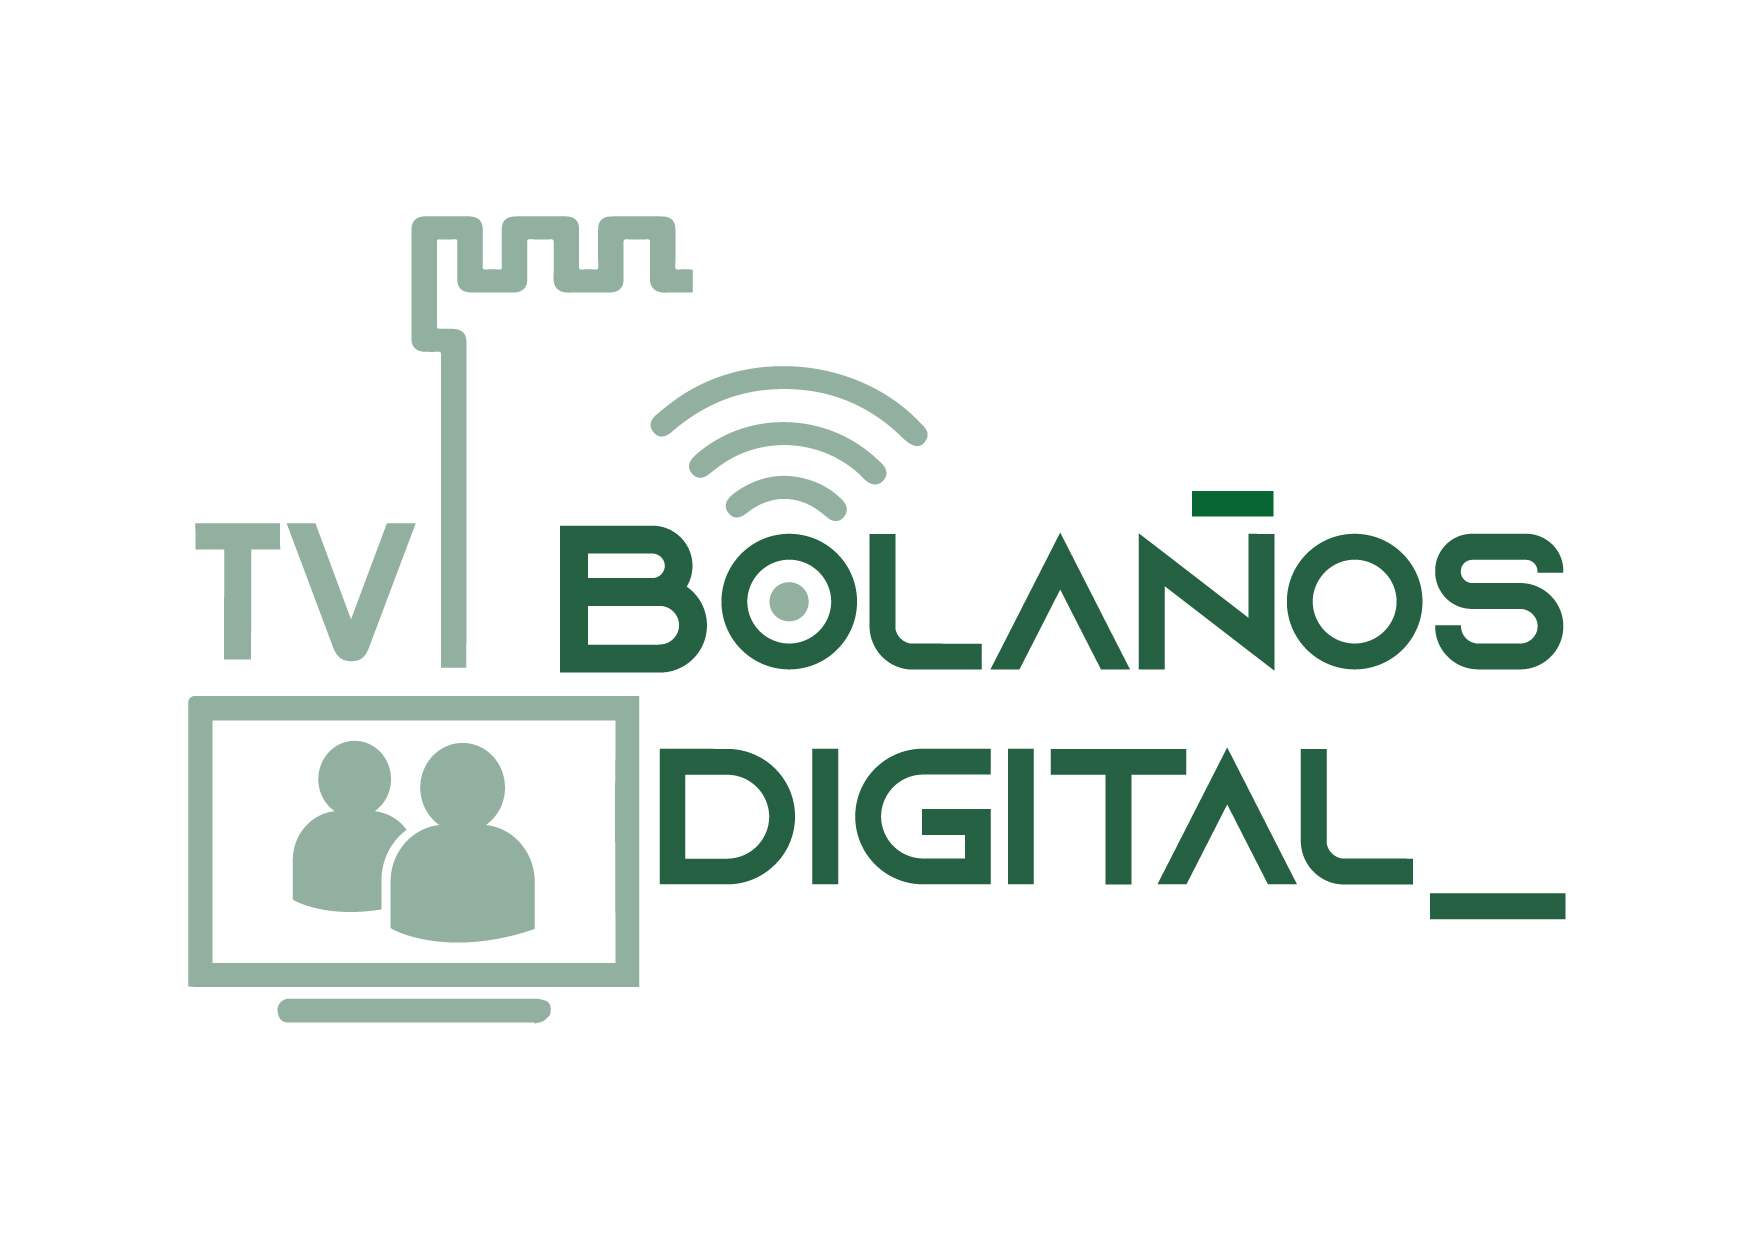 TV Bolaños Digital